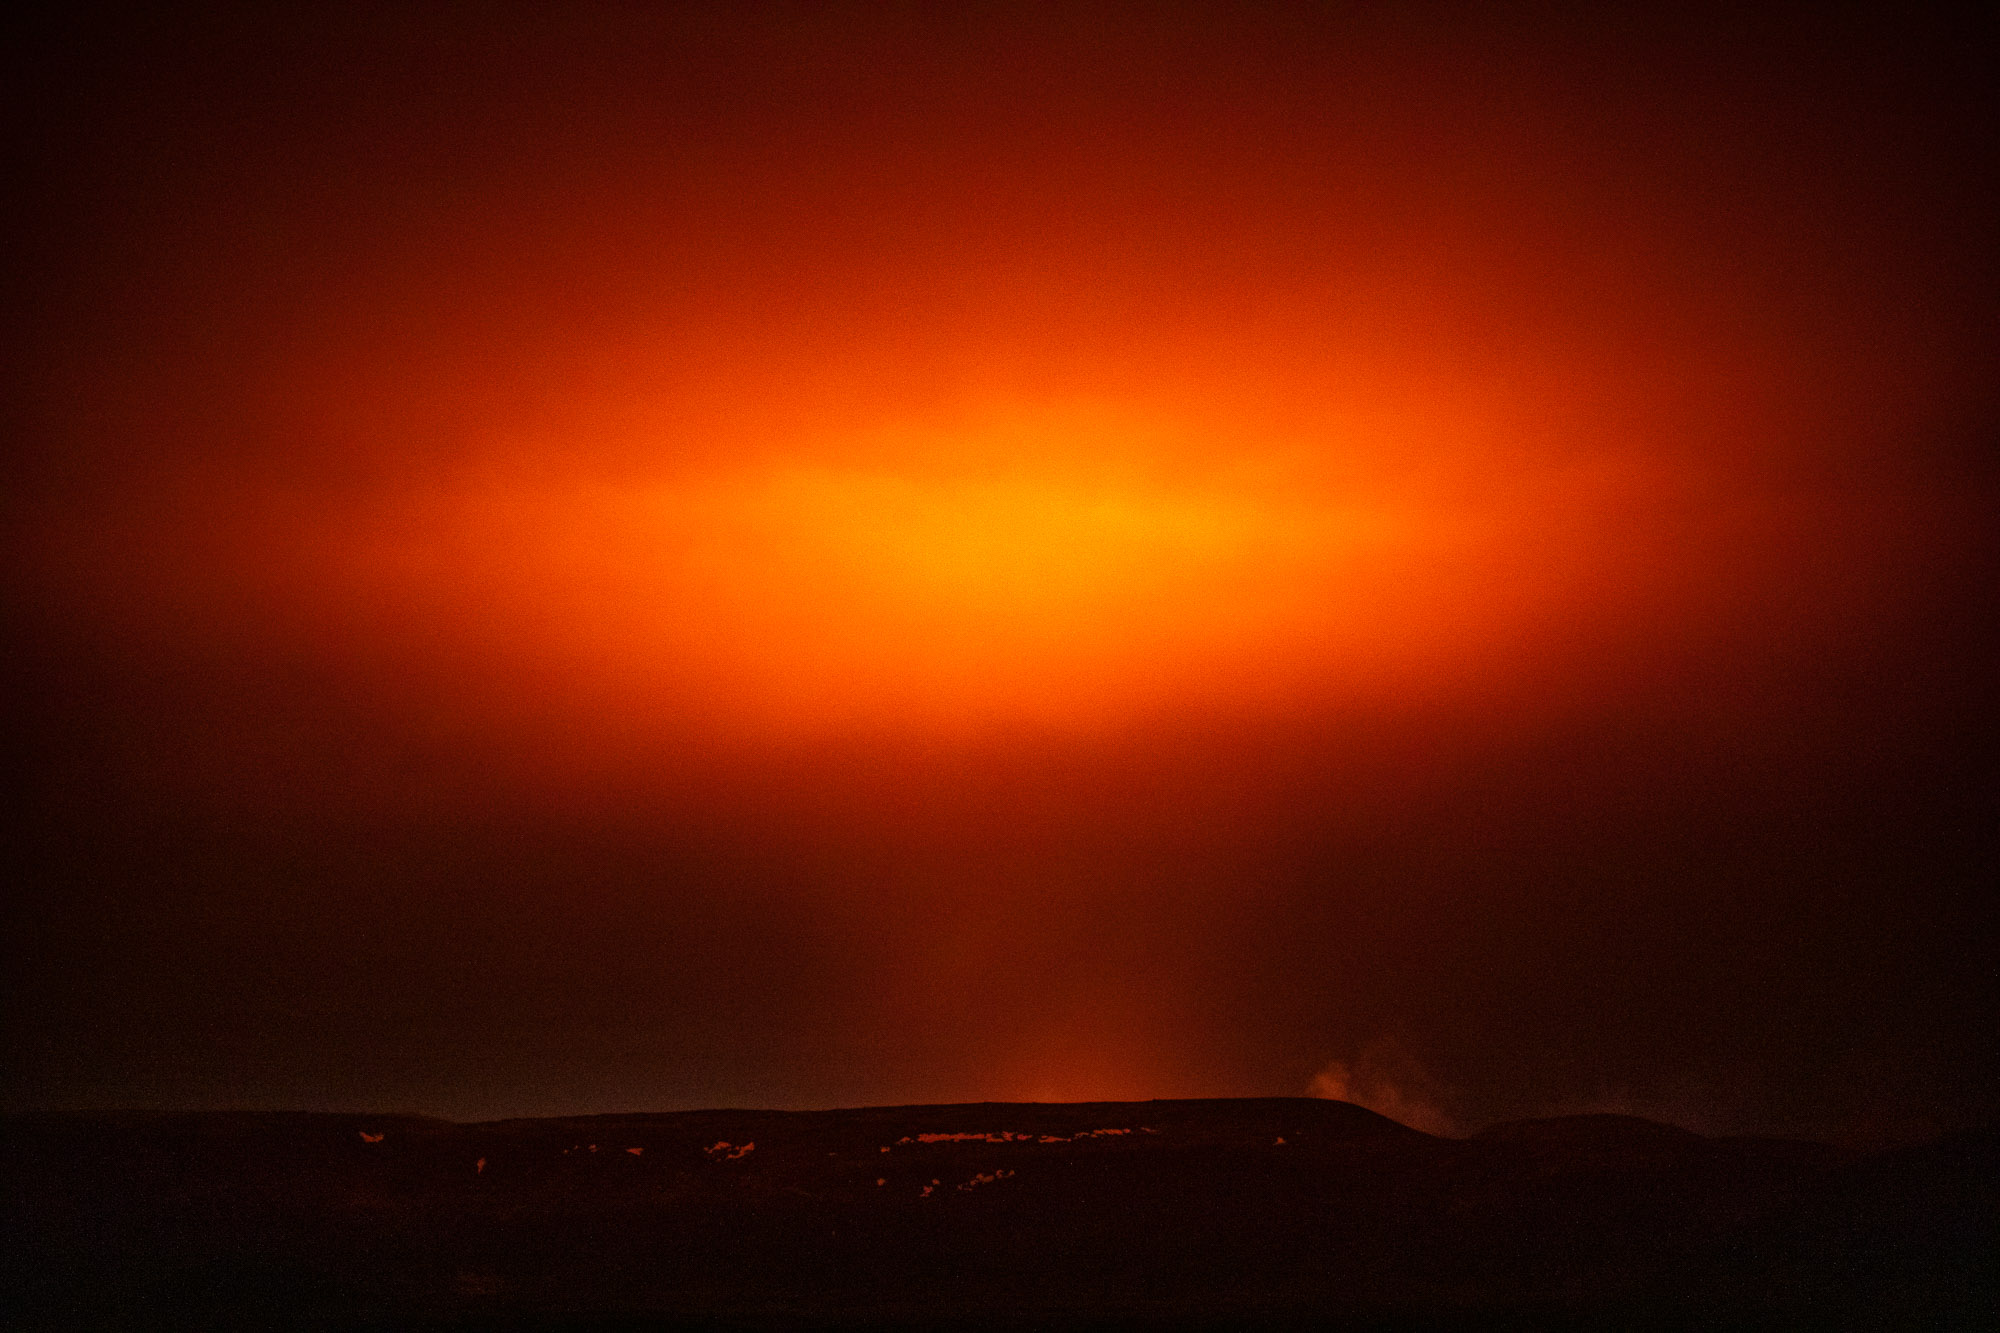 Geldingadalsgos eruption, shot by Art Bicnick